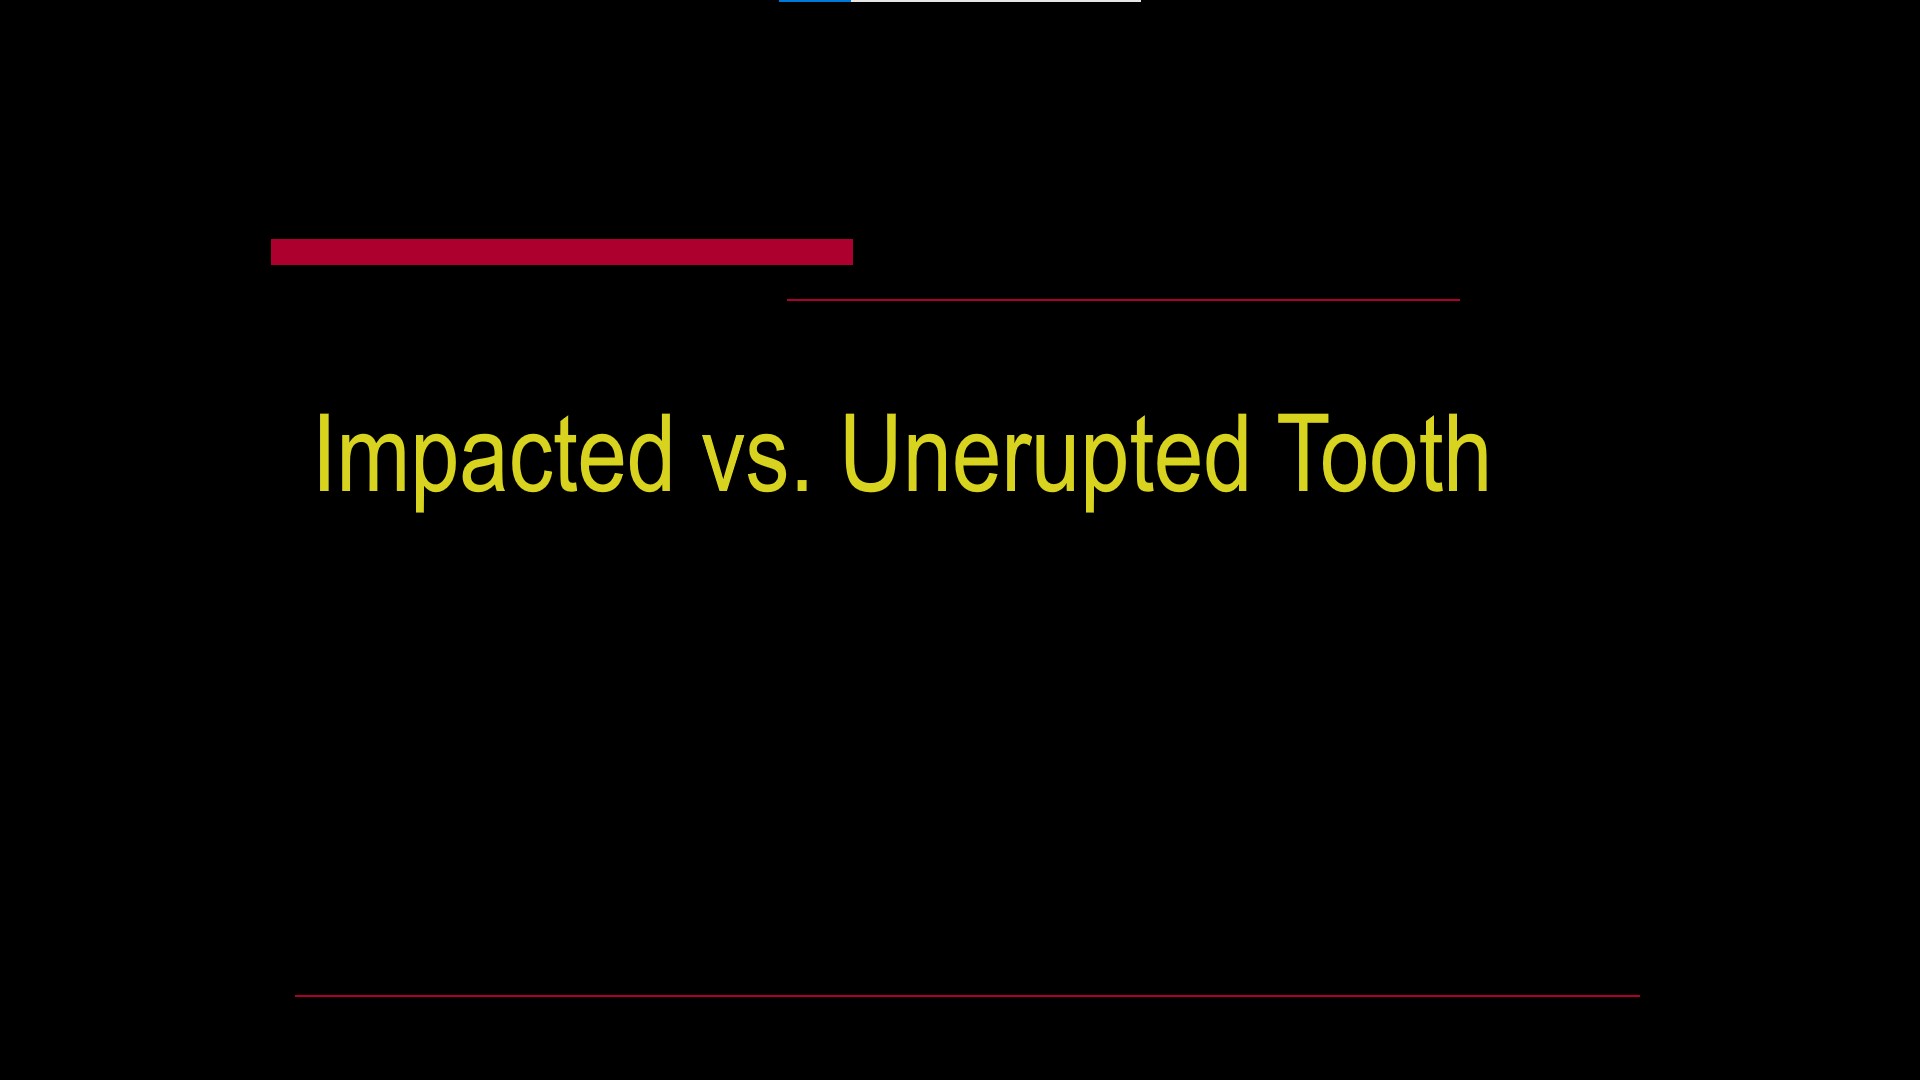 Impacted teeth1